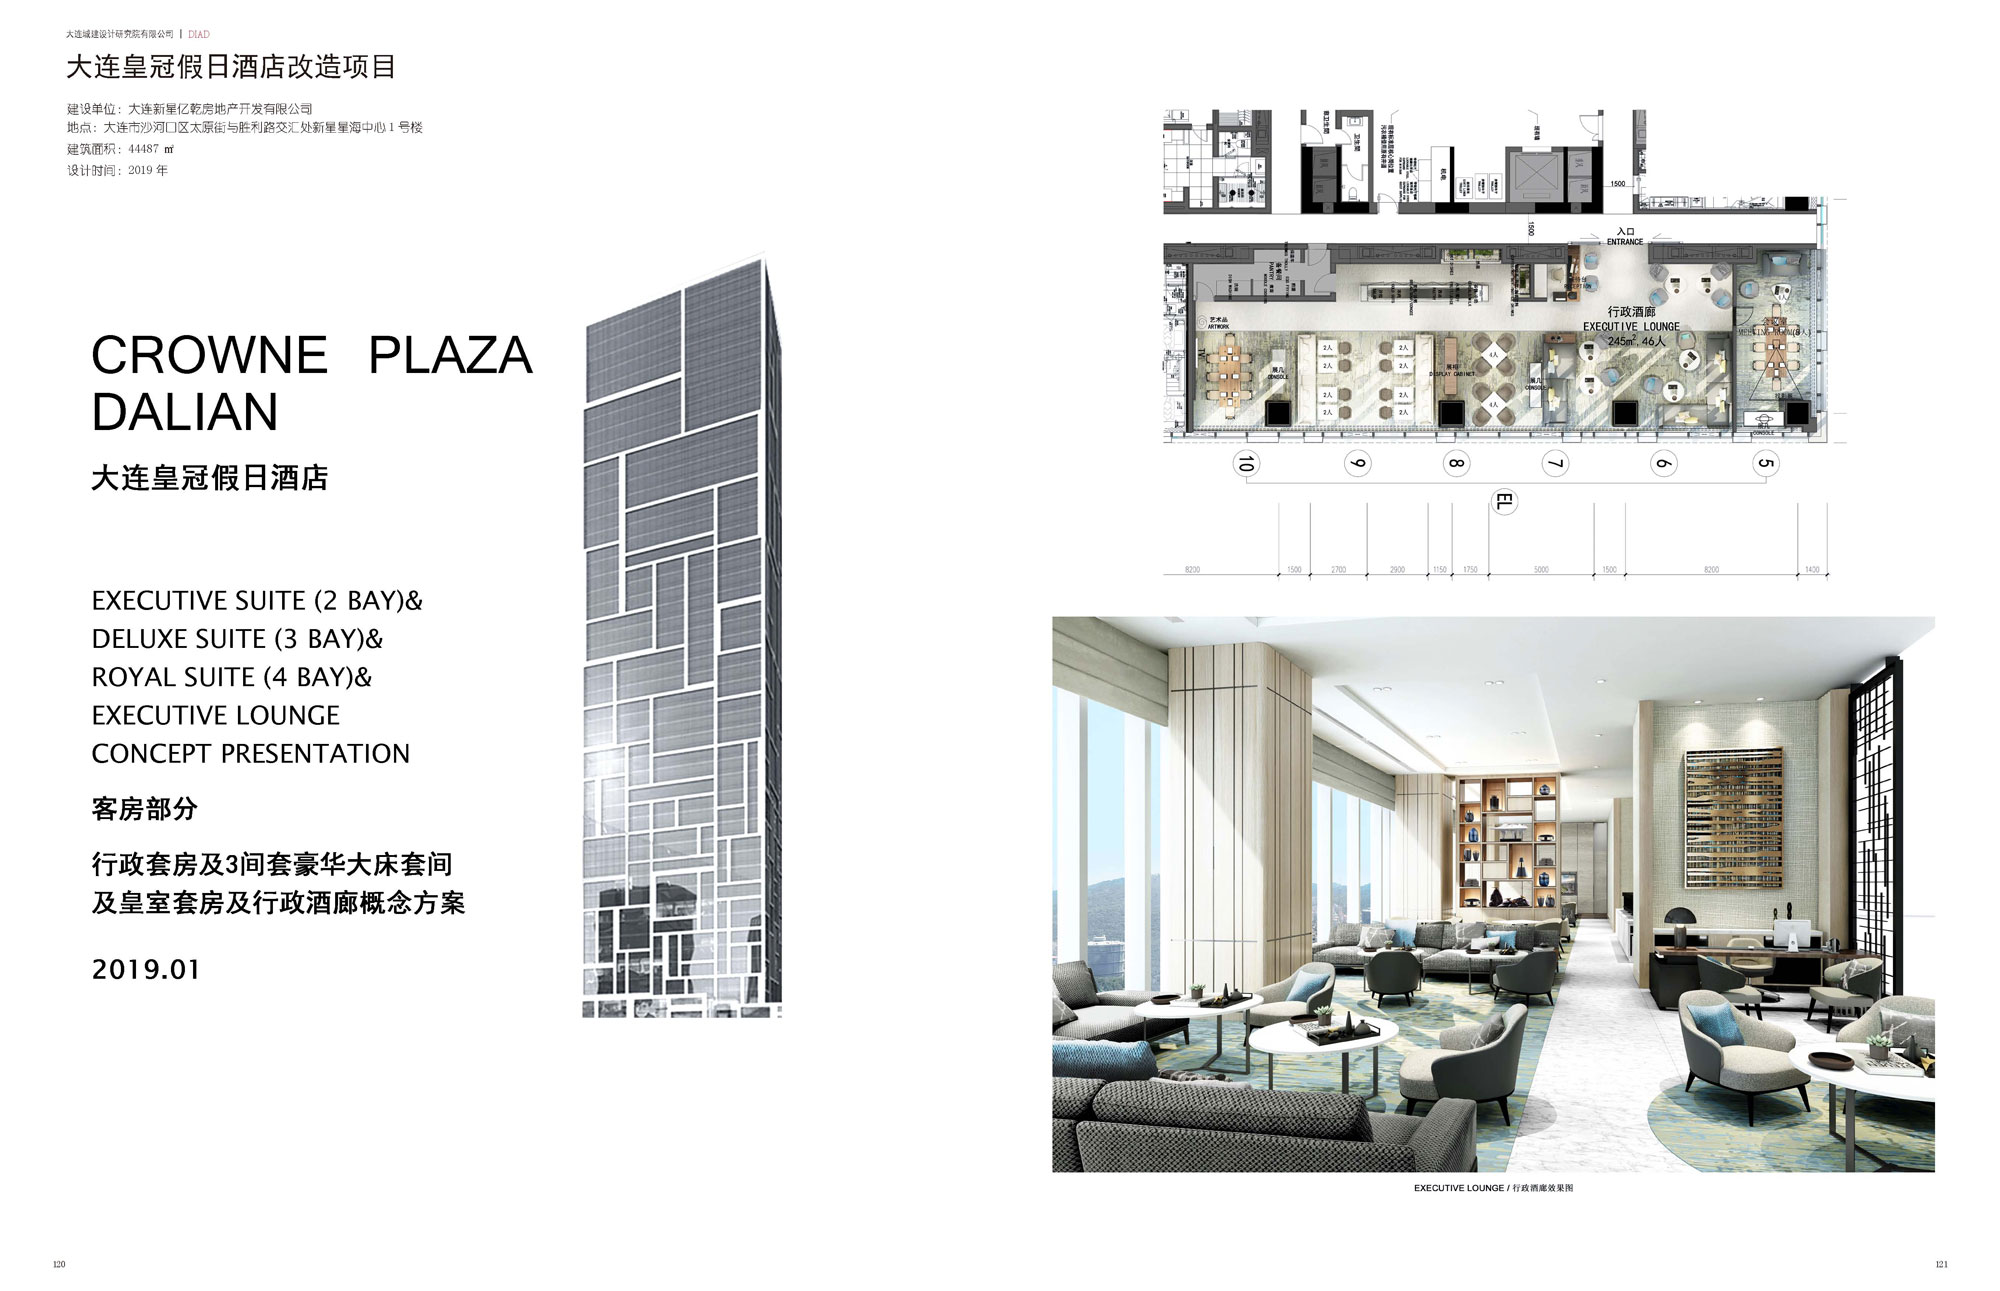 Dalian Crowne Plaza Renovation Project